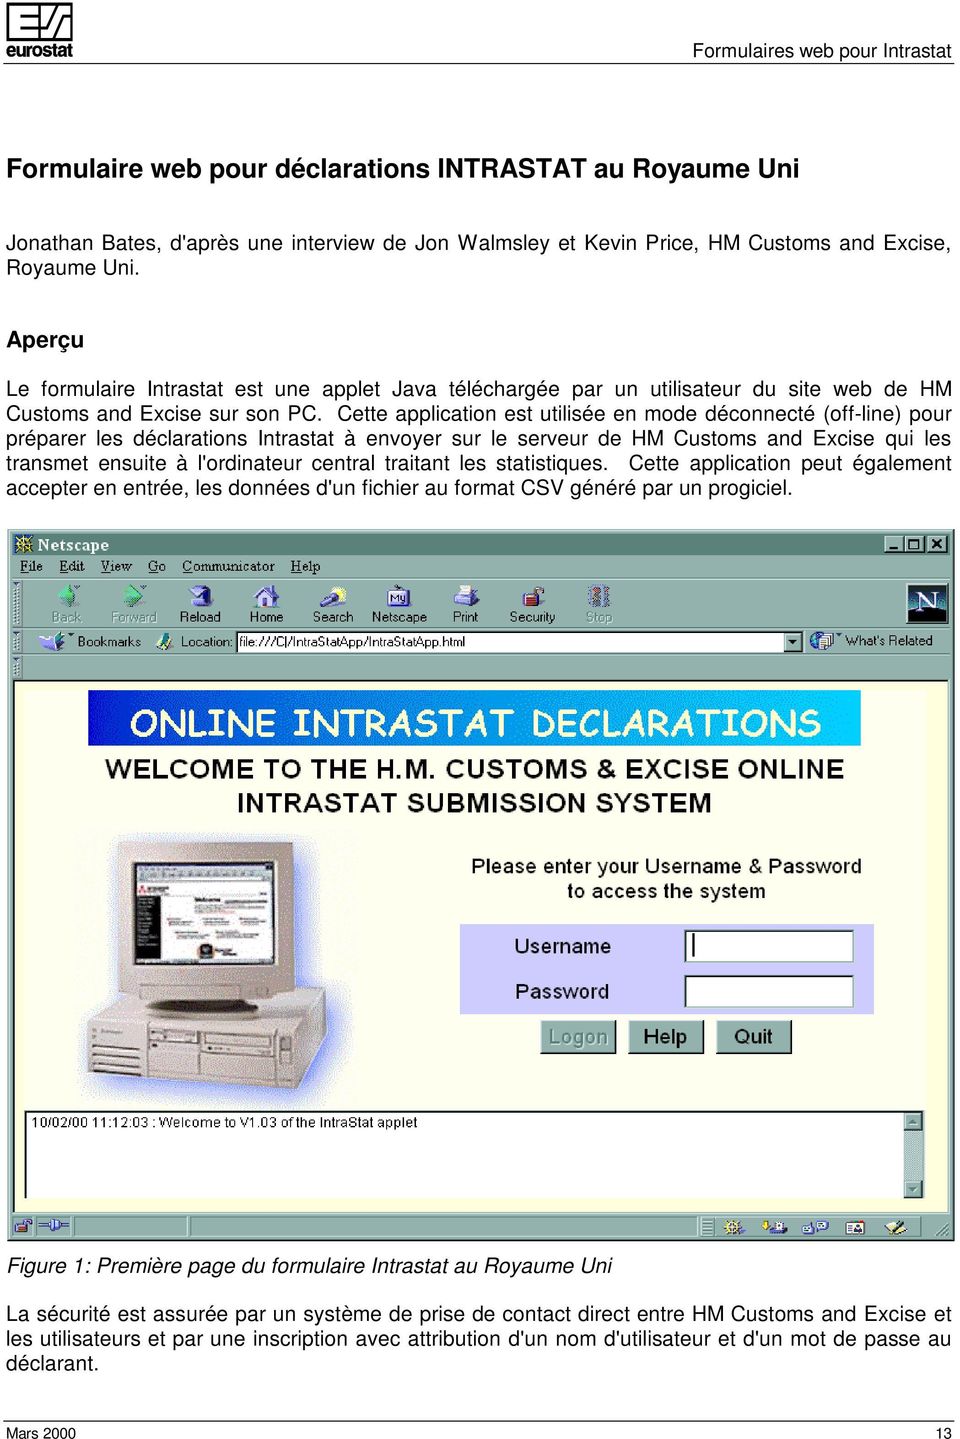 Cette application est utilisée en mode déconnecté (off-line) pour préparer les déclarations Intrastat à envoyer sur le serveur de HM Customs and Excise qui les transmet ensuite à l'ordinateur central